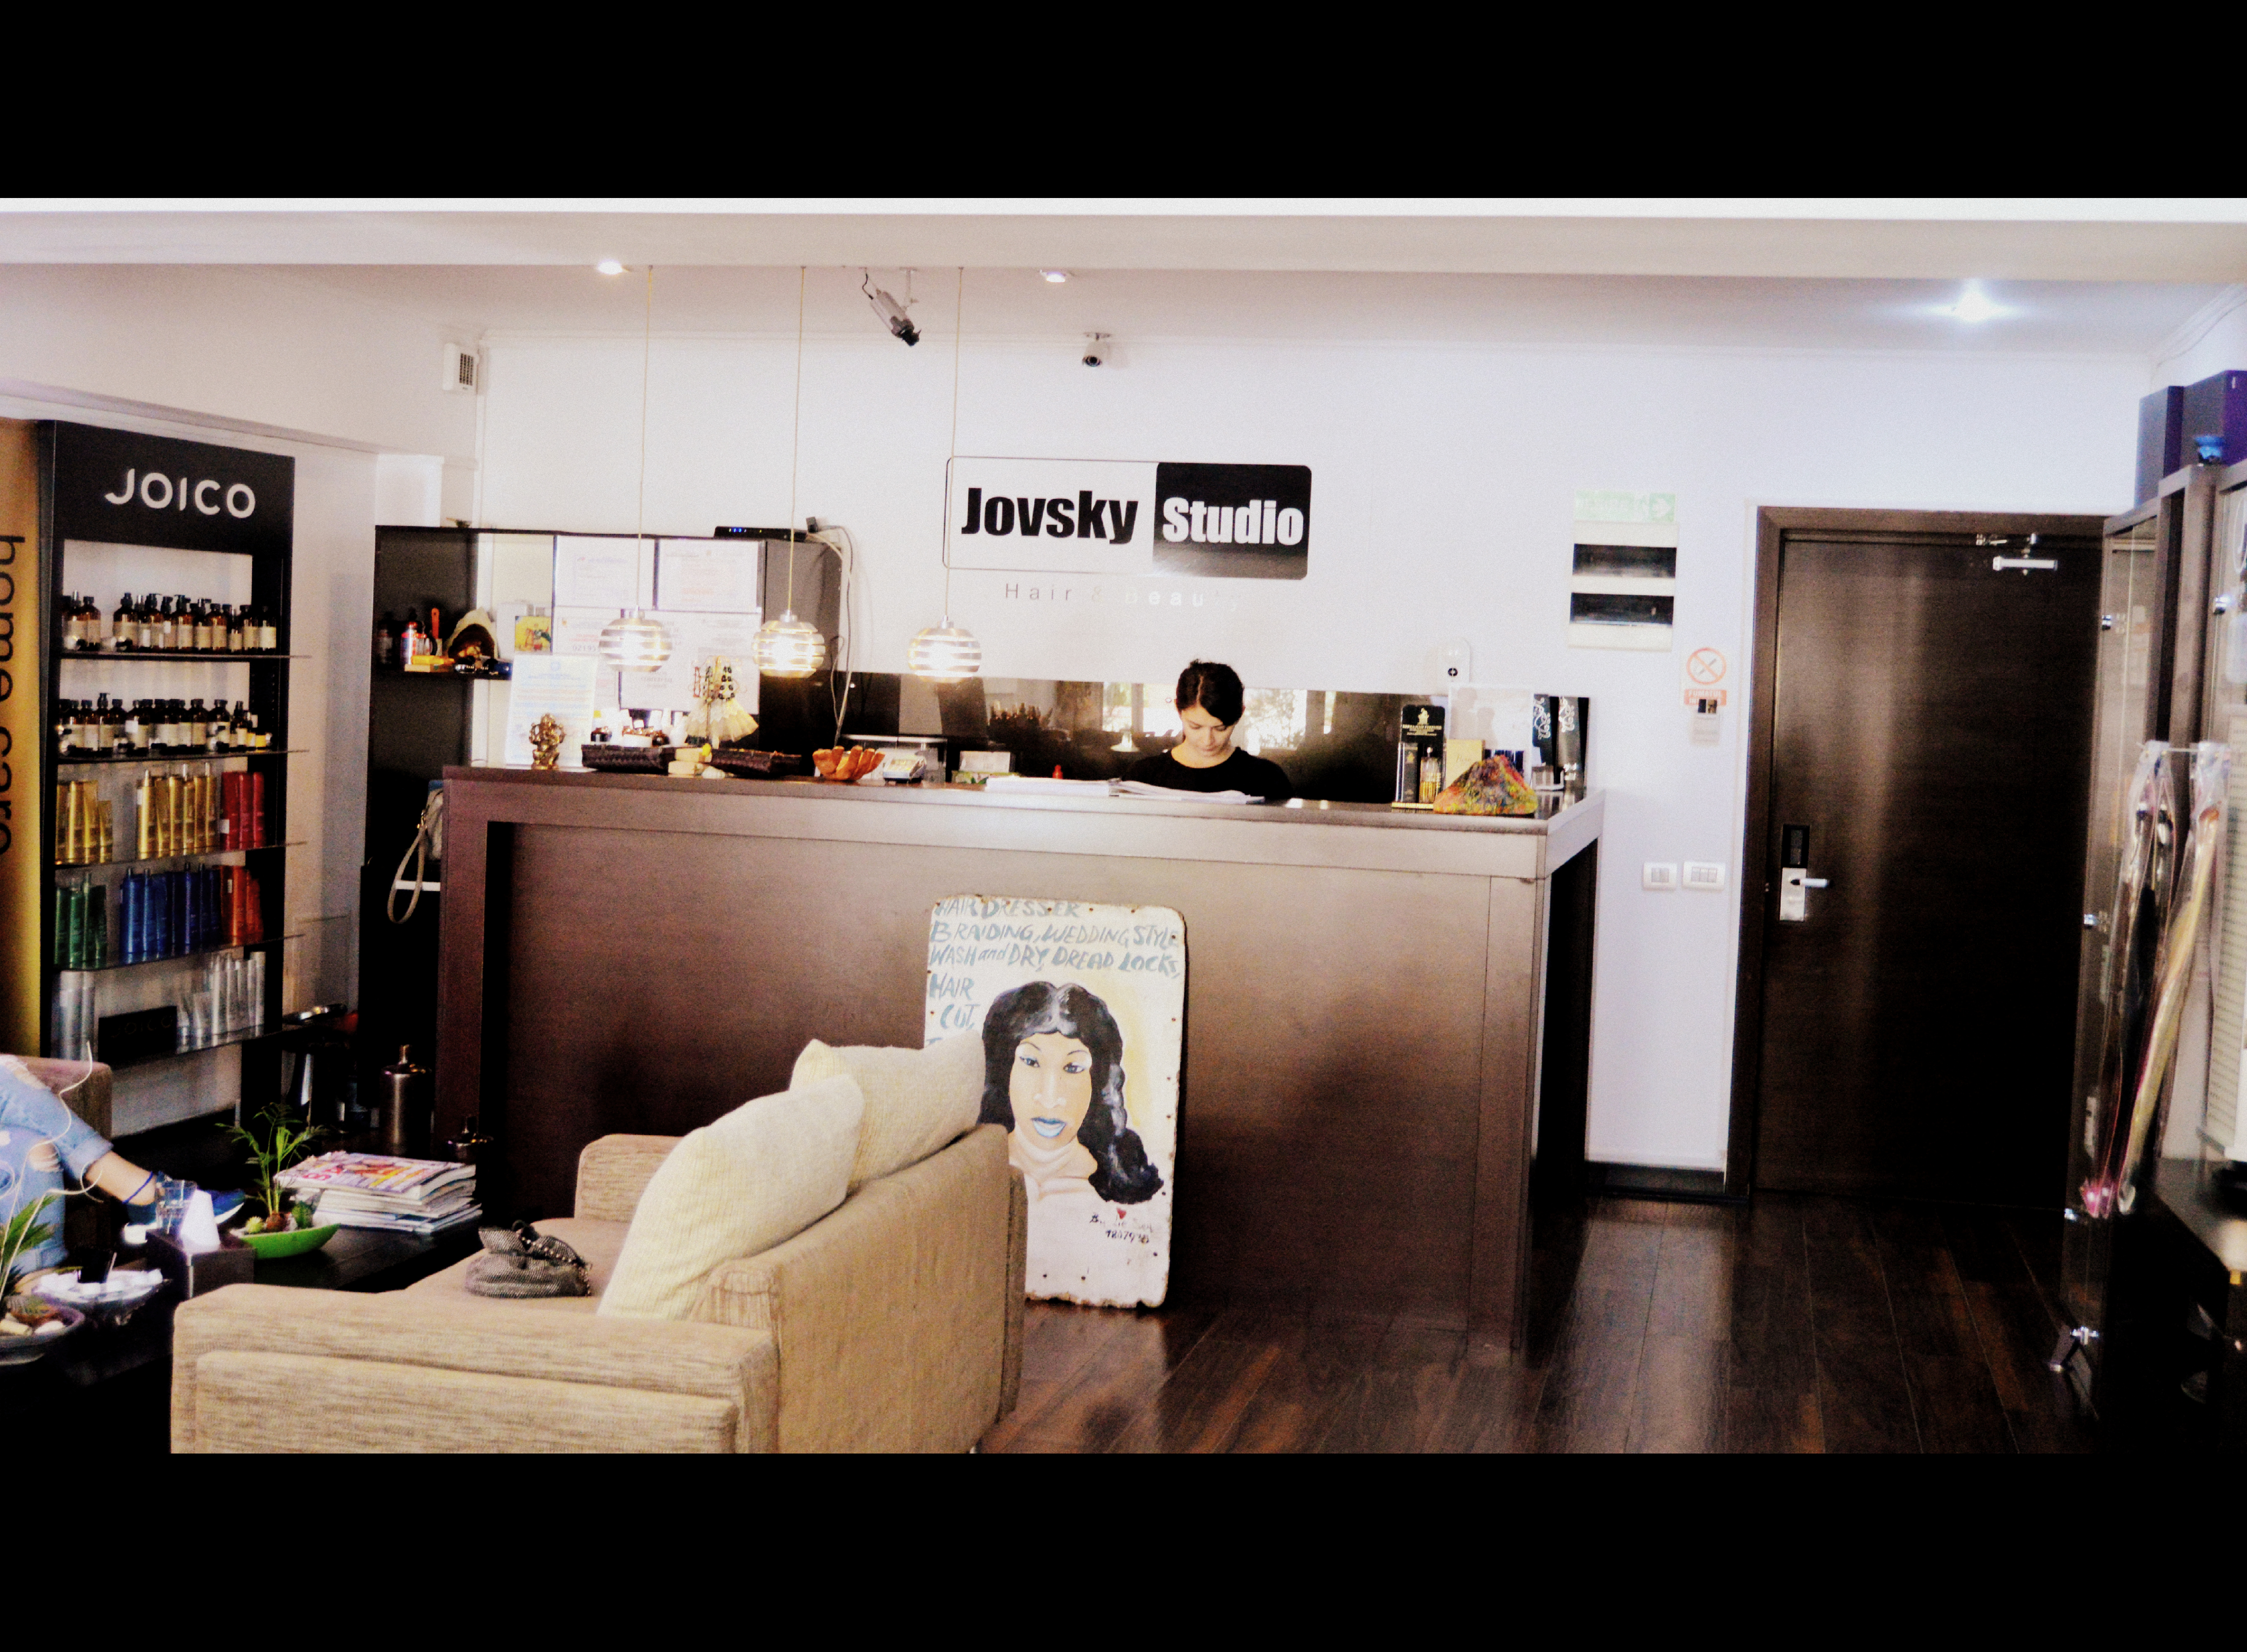 Jovsky Studio